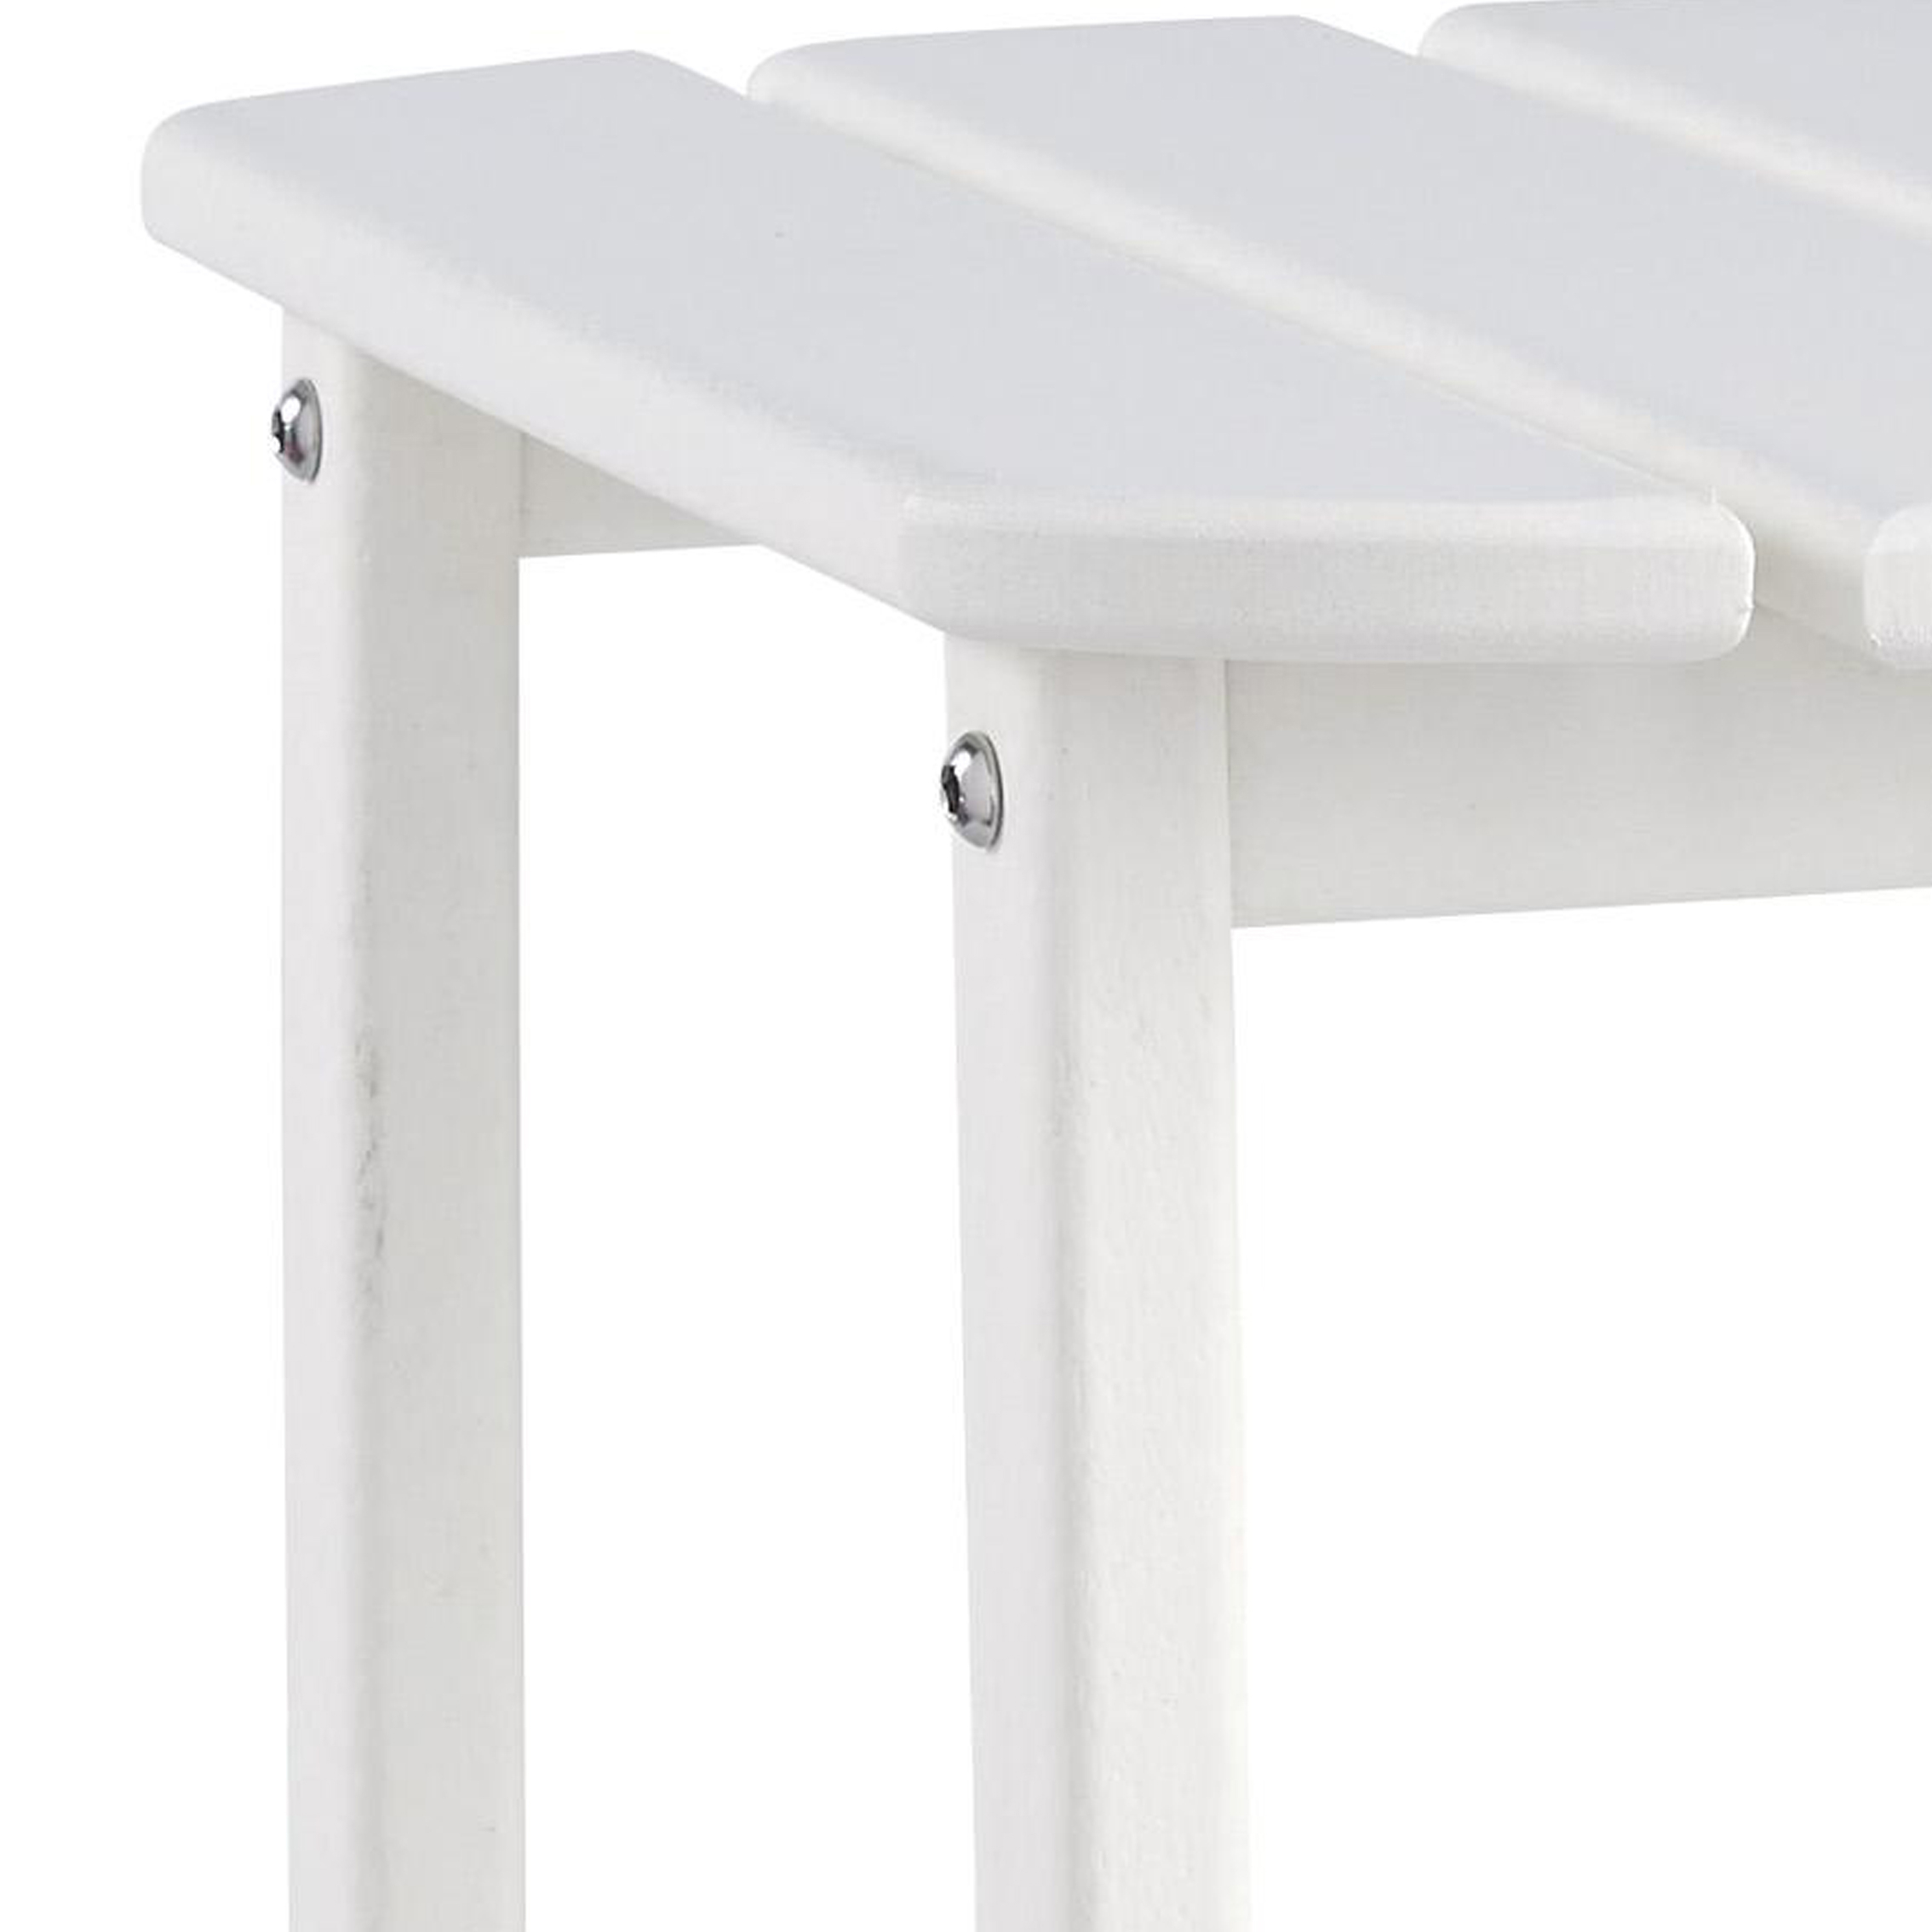 Slatted Rectangular Hard Plastic End Table With Straight Legs, White- Saltoro Sherpi